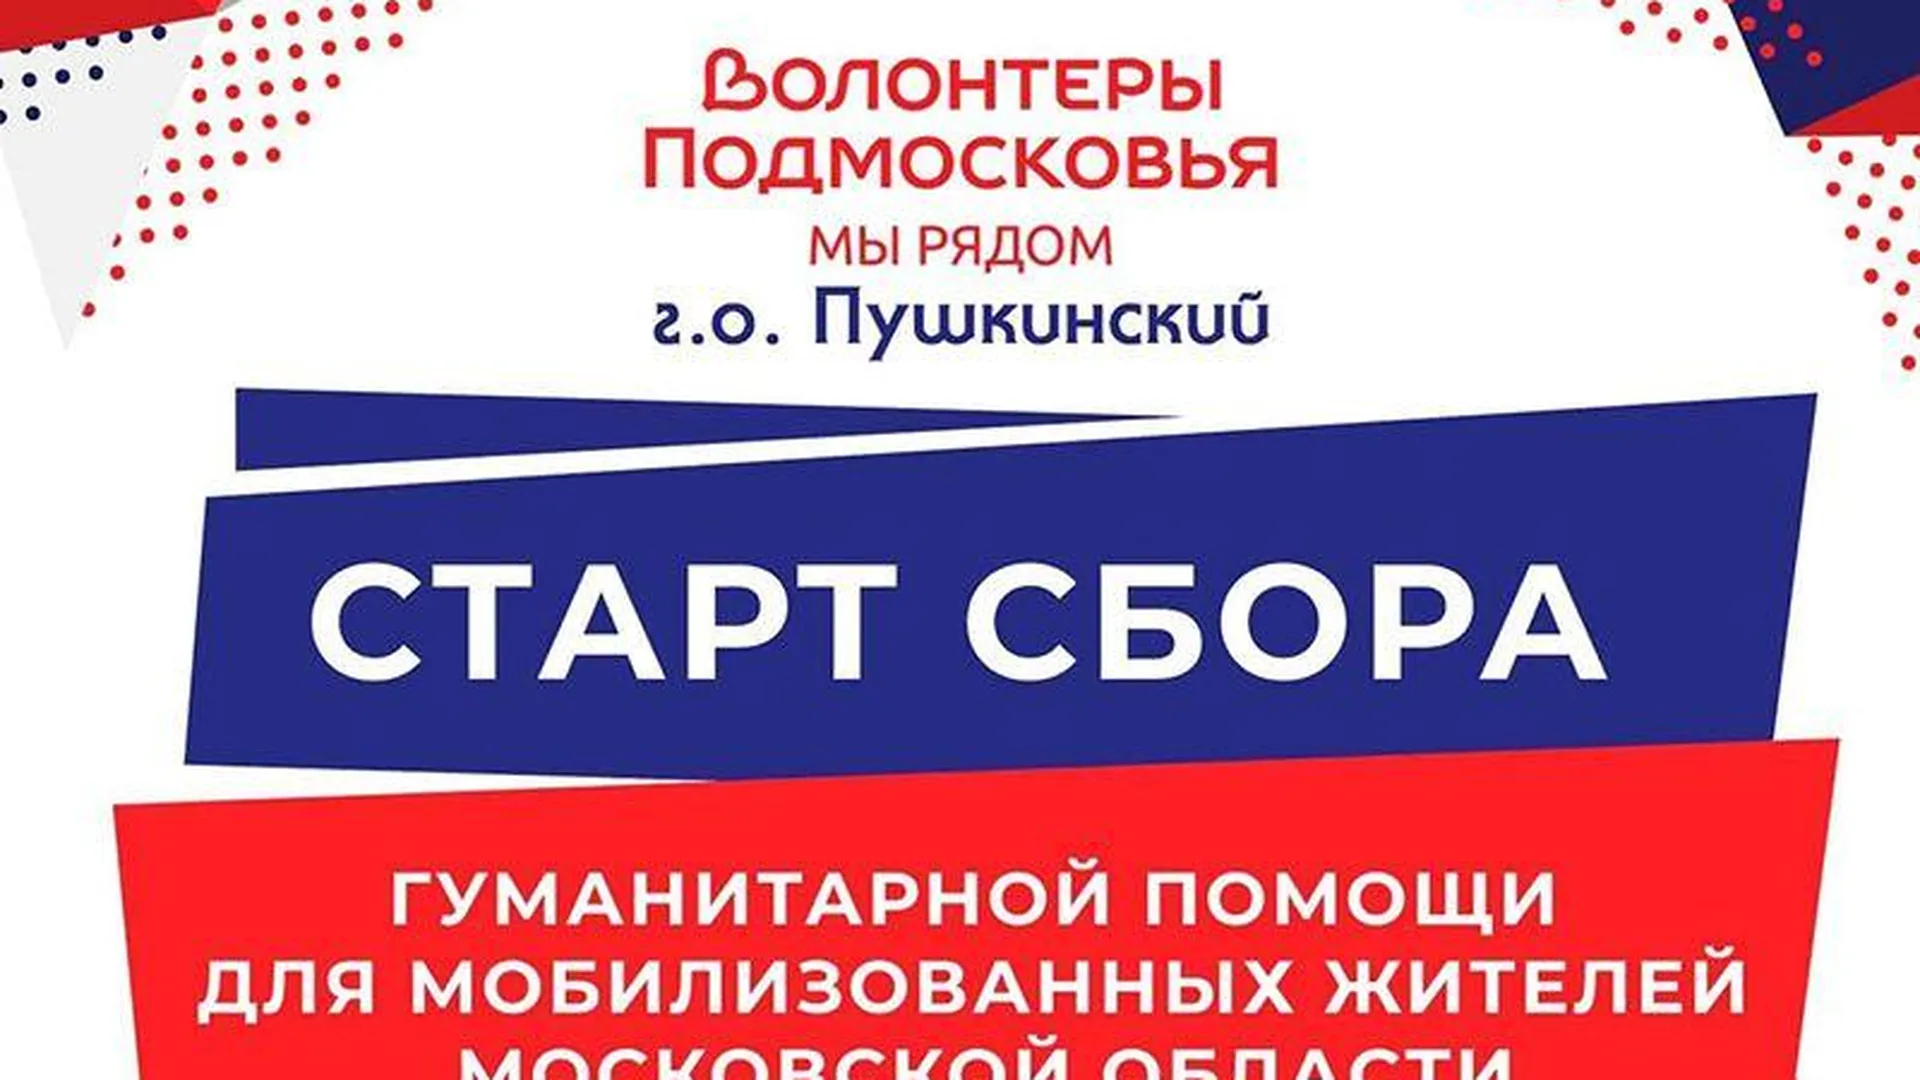 Волонтеры Подмосковья открыли пункты сбора гуманитарной помощи в Пушкинском округе 